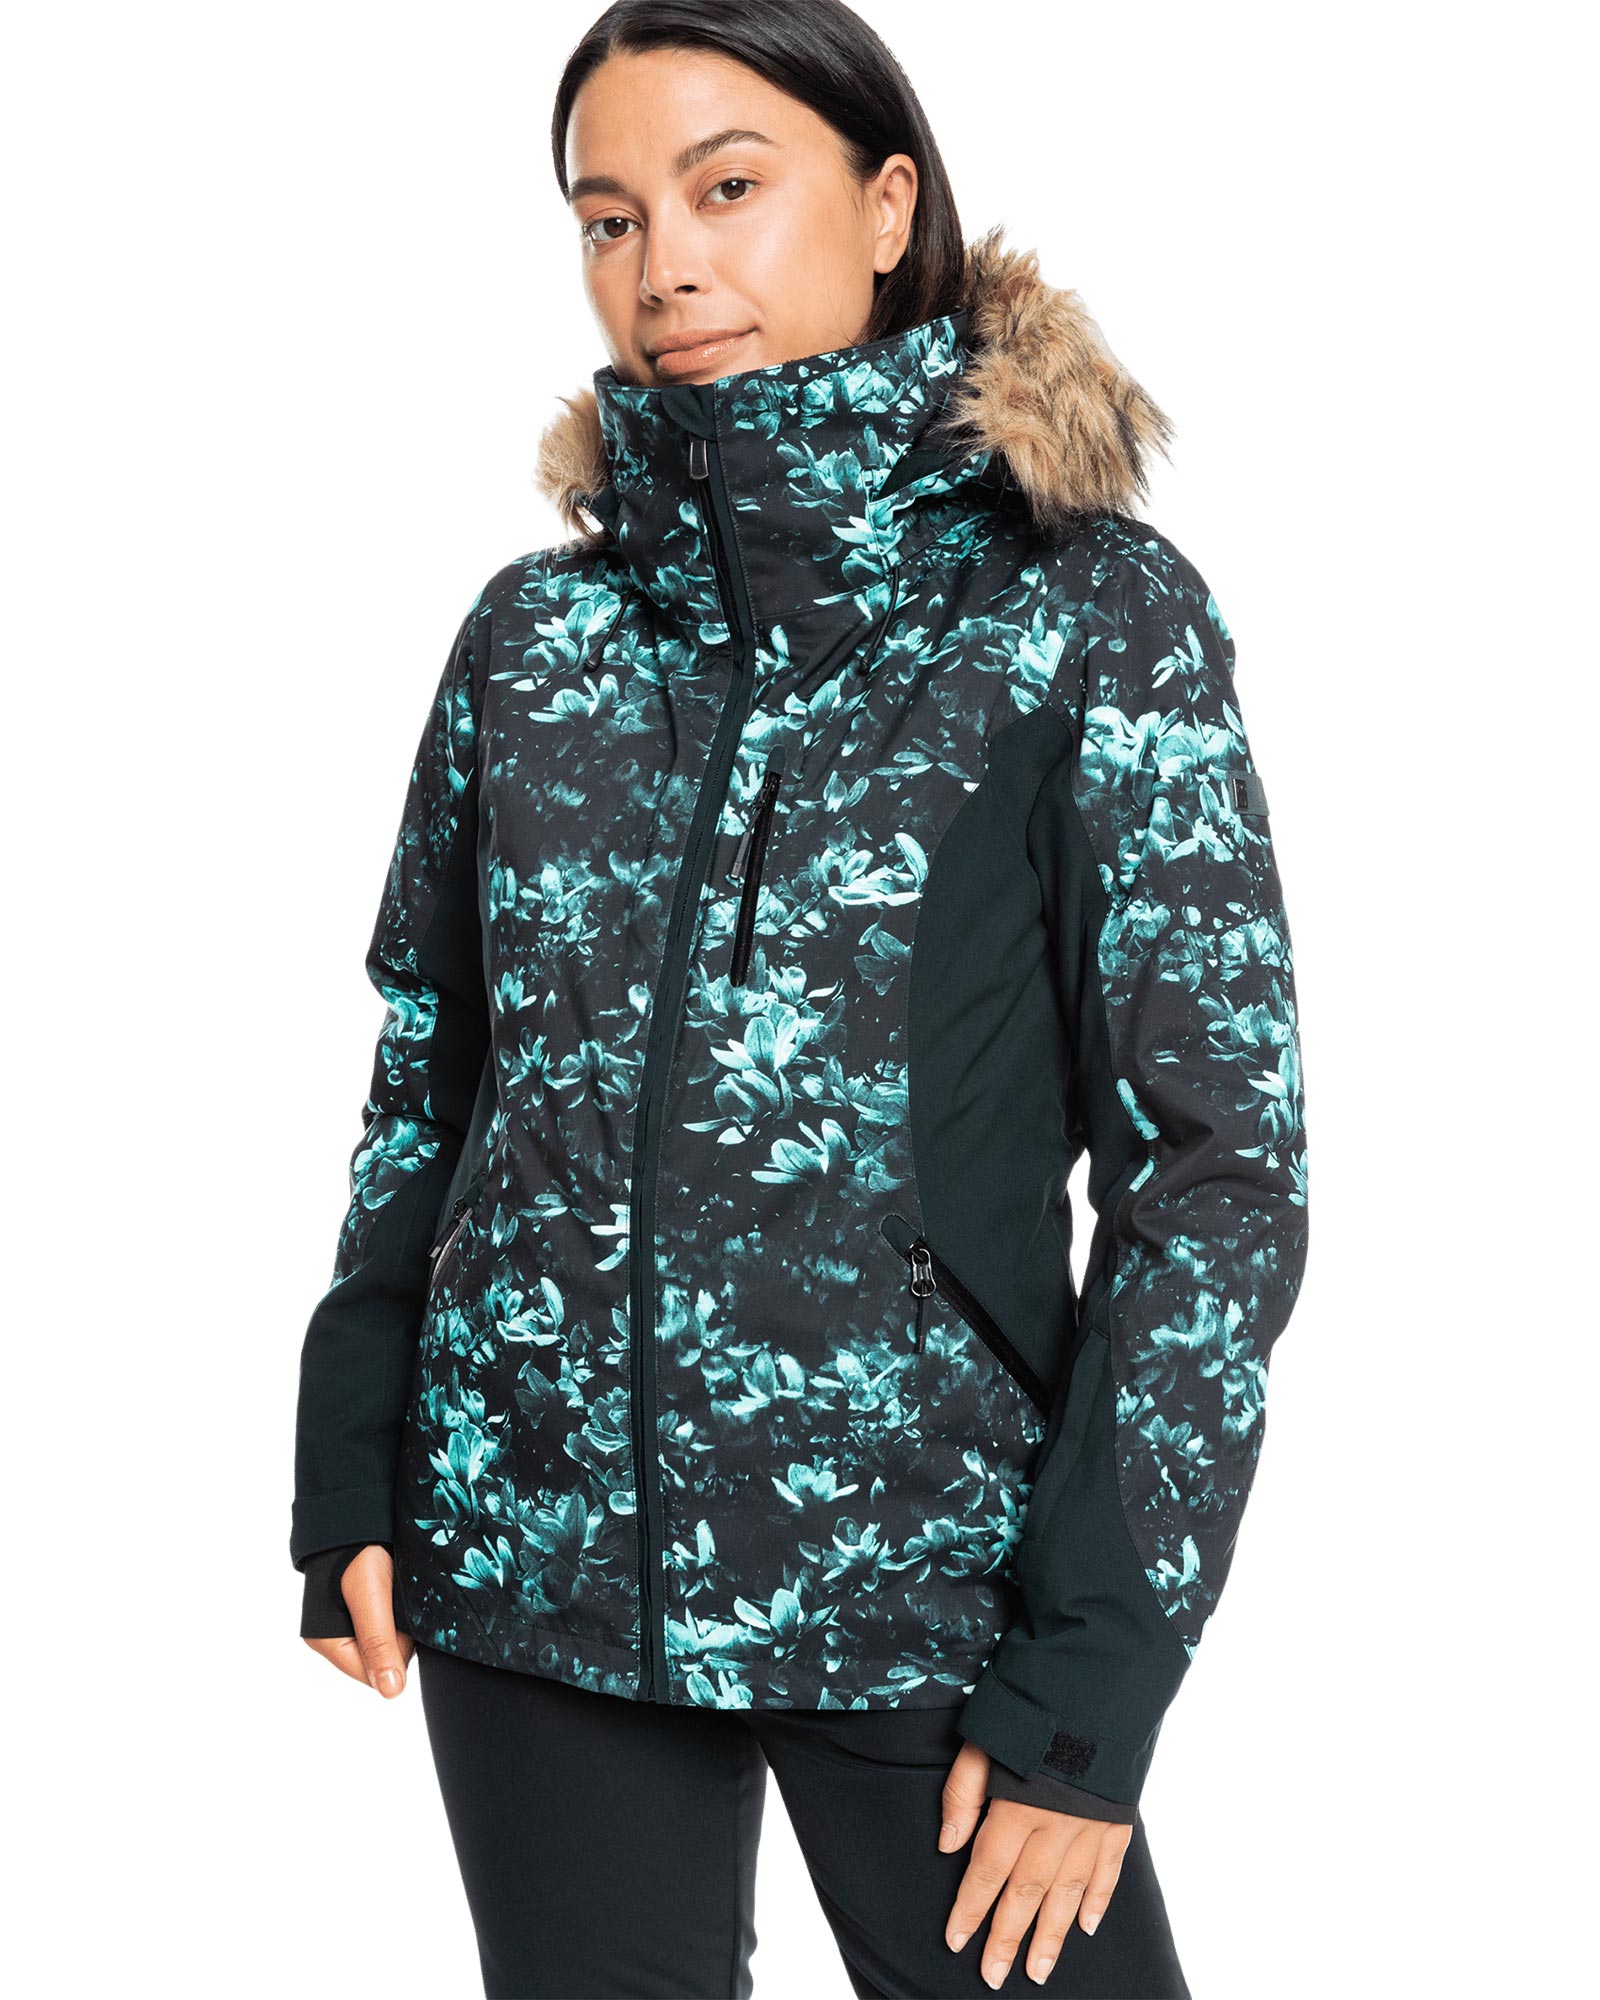 Roxy Jet Ski Premium Womens Jacket